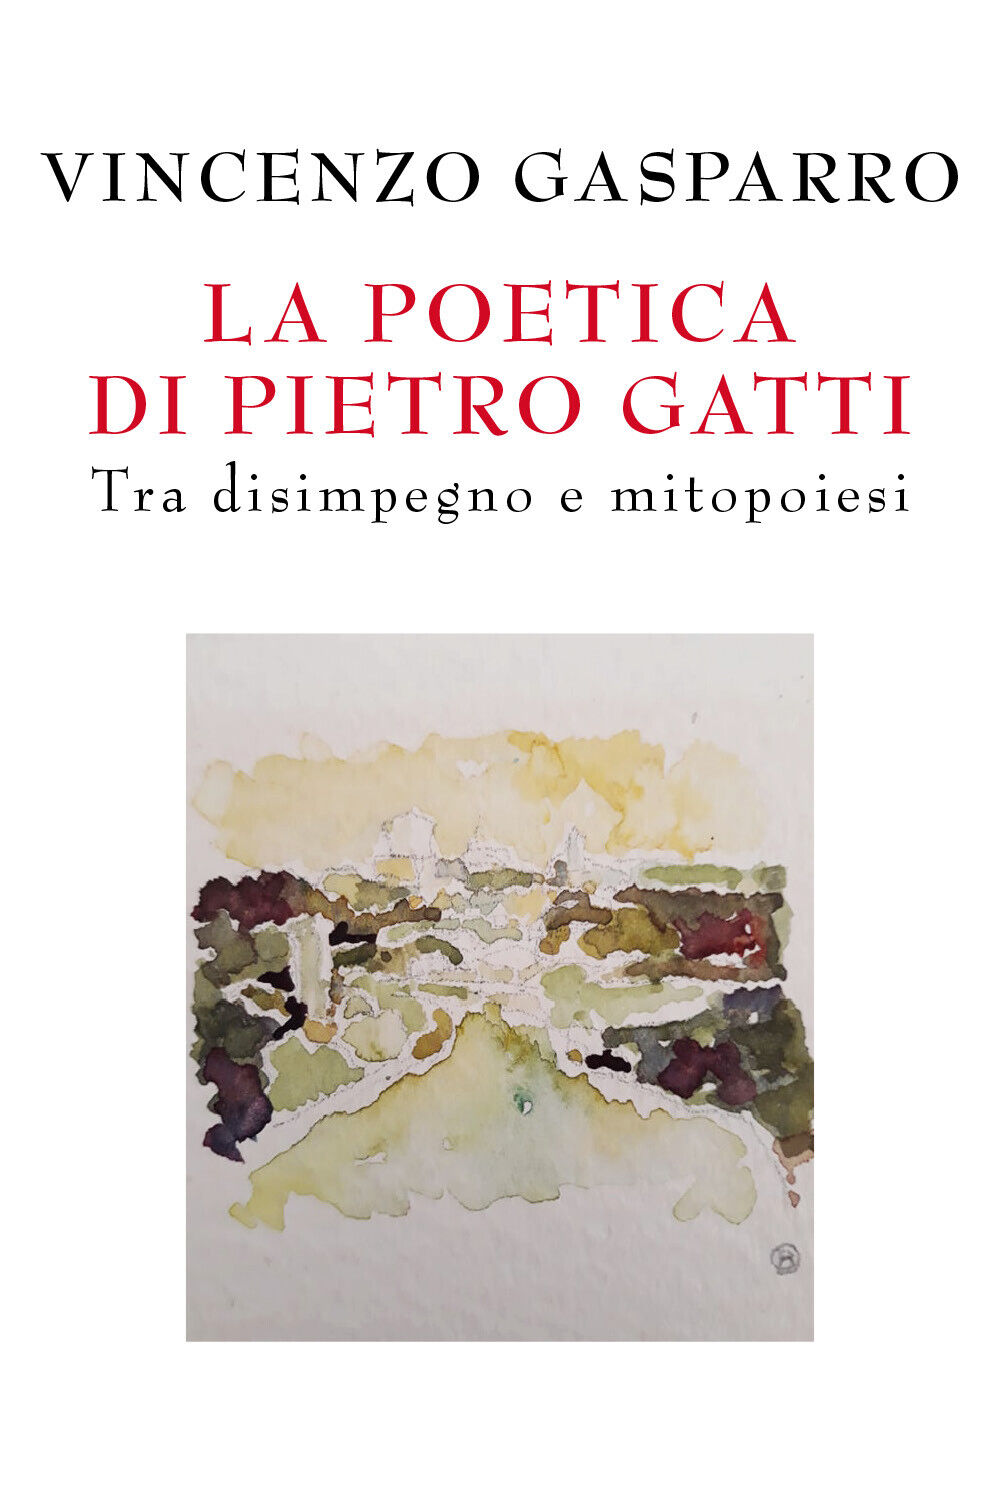 La poetica di Pietro Gatti. Tra disimpegno e mitopoiesi di Vincenzo Gasparro,  2